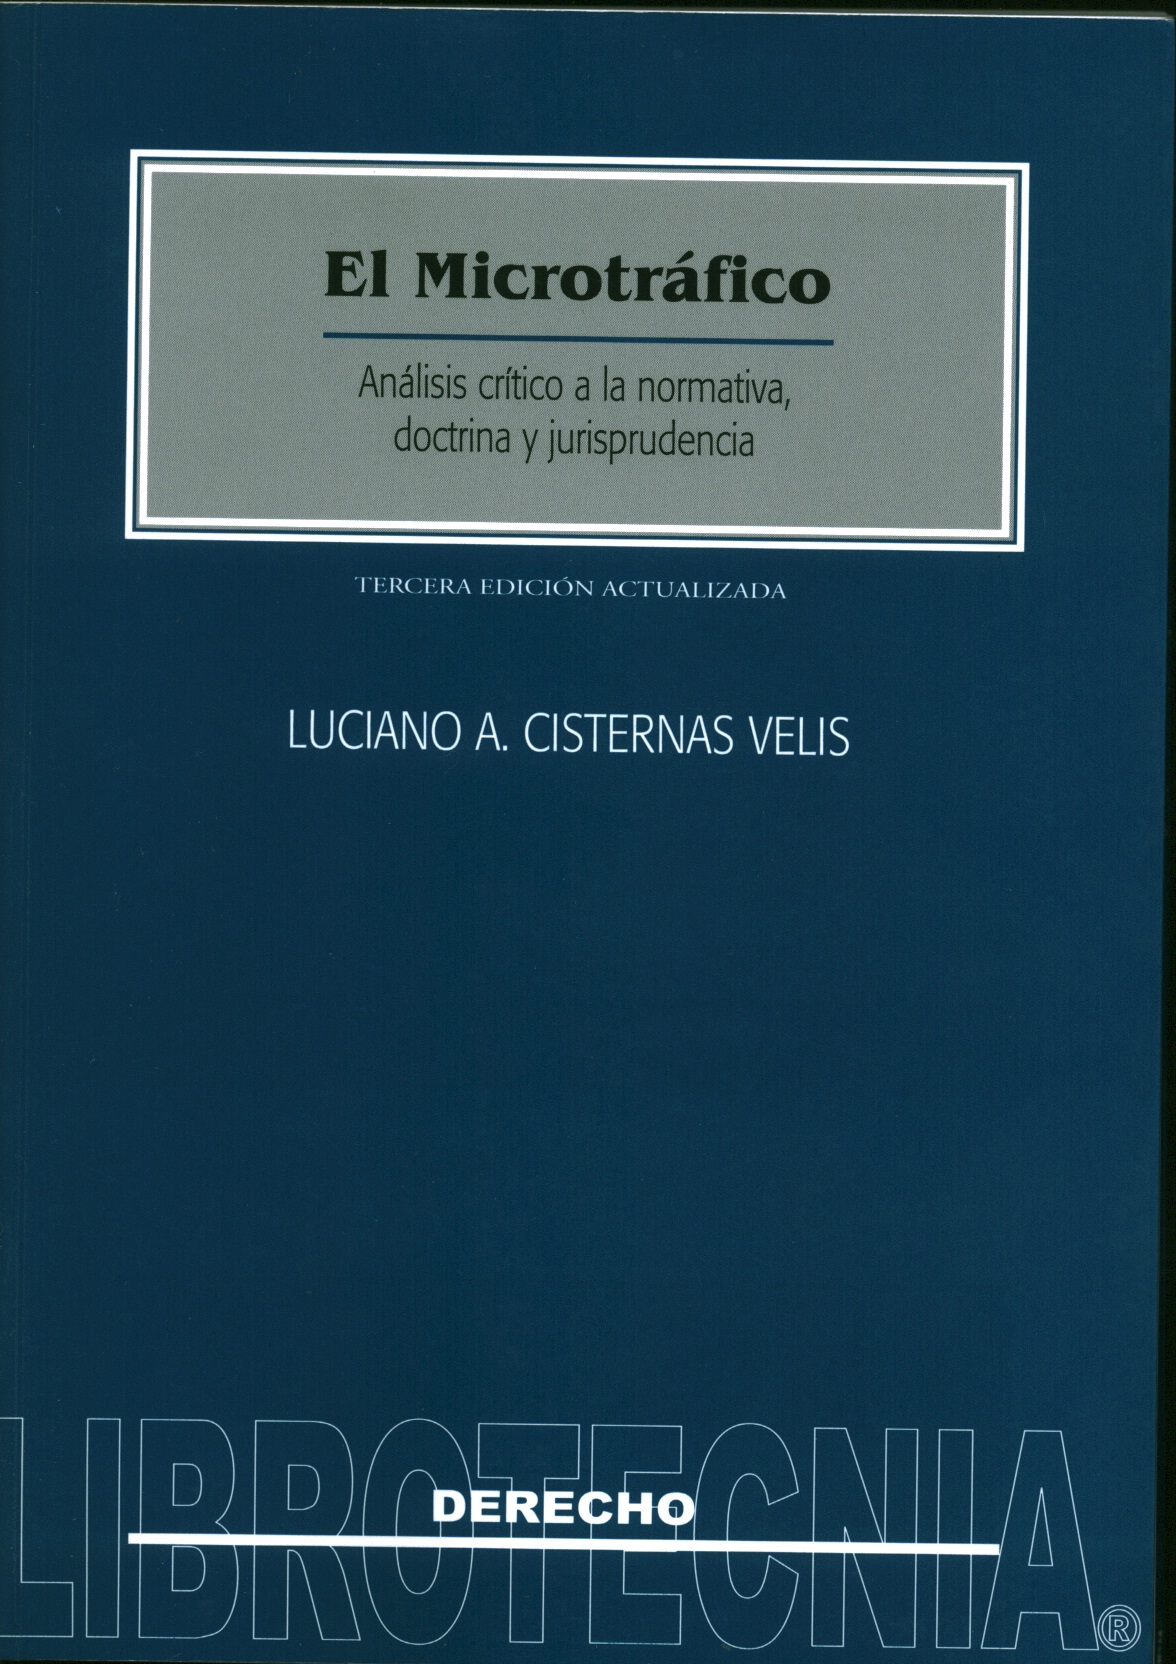 El microtráfico, análisis crítico a la normativa, doctrina y jurisprudencia